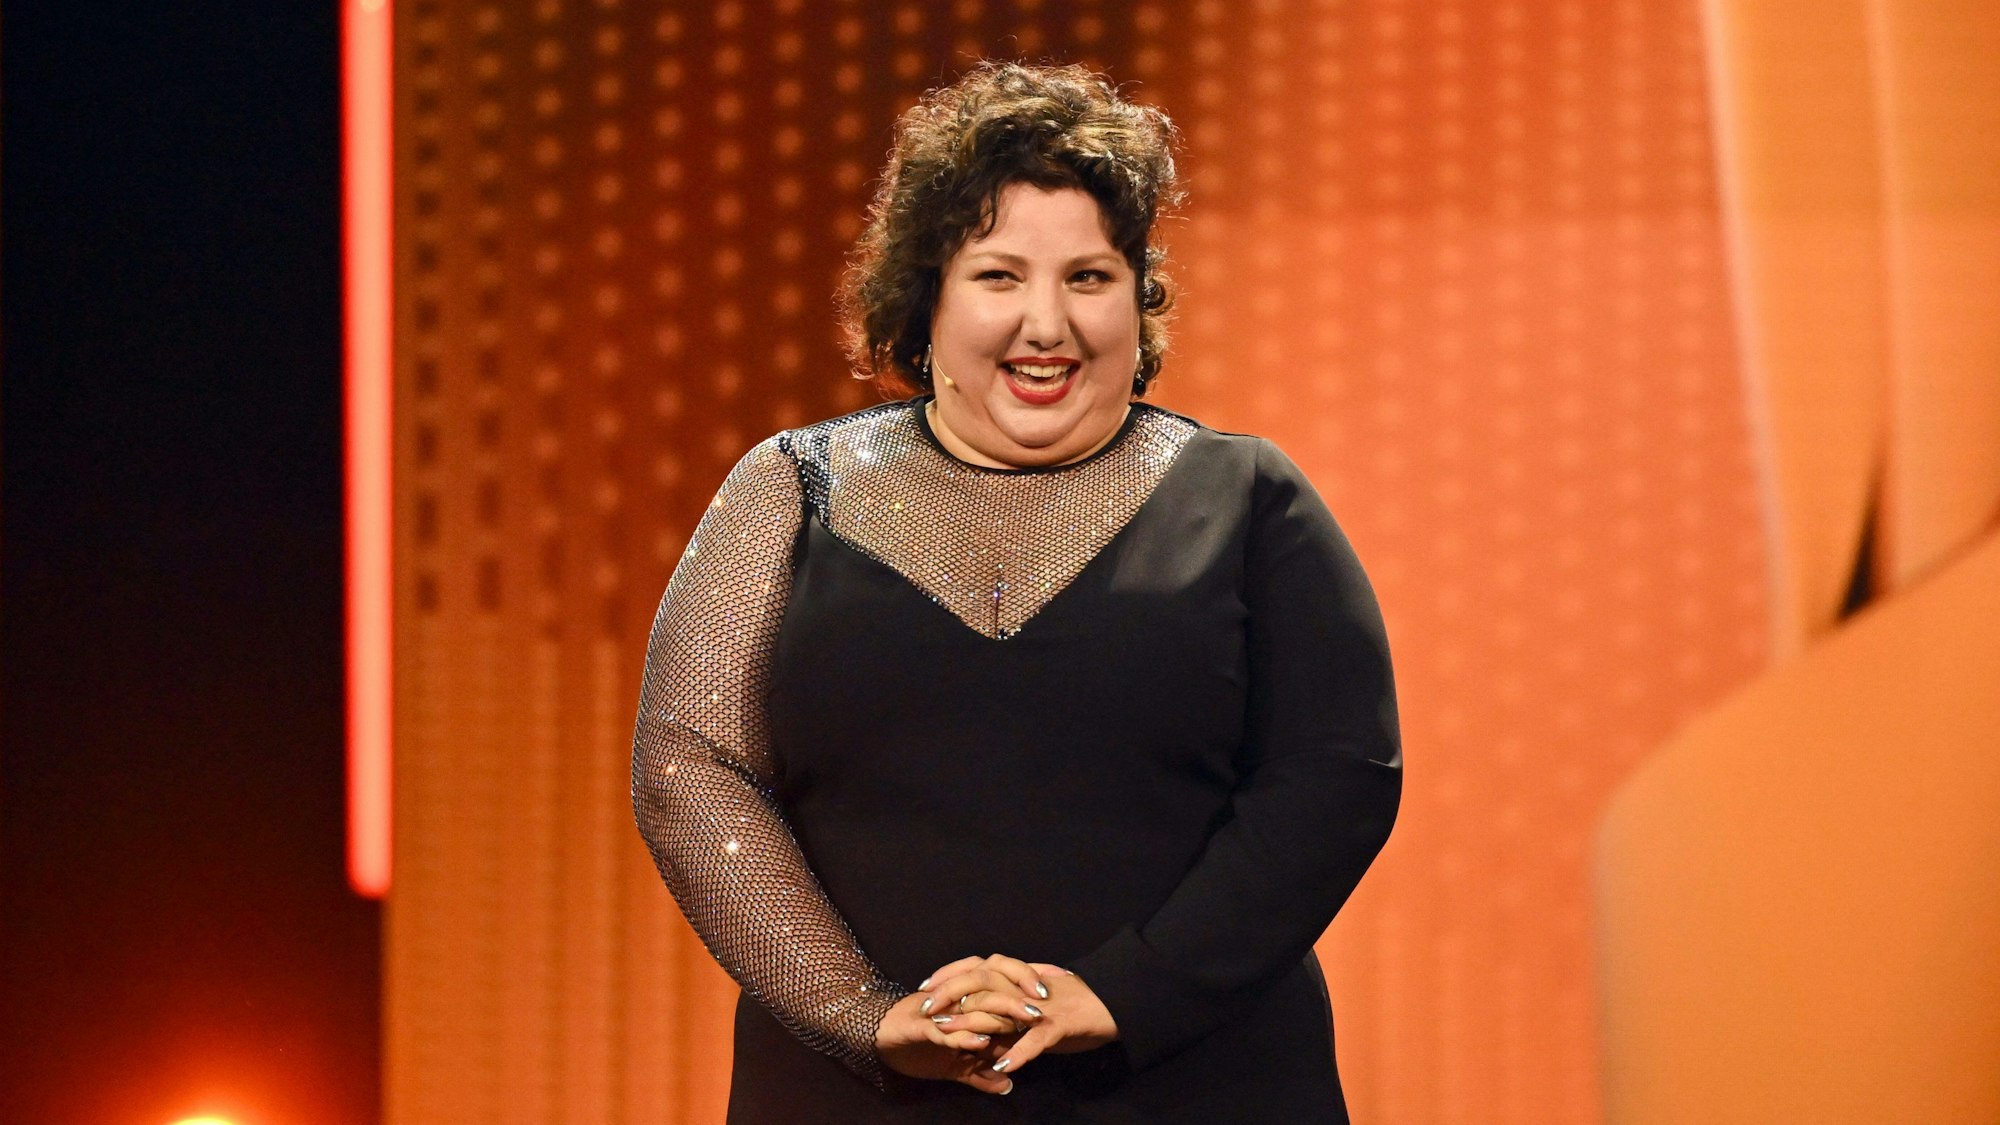 Meltem Kaptan steht in einem schwarzen Kleid auf einer Bühne, im Hintergrund sind orange Animationen zu sehen.